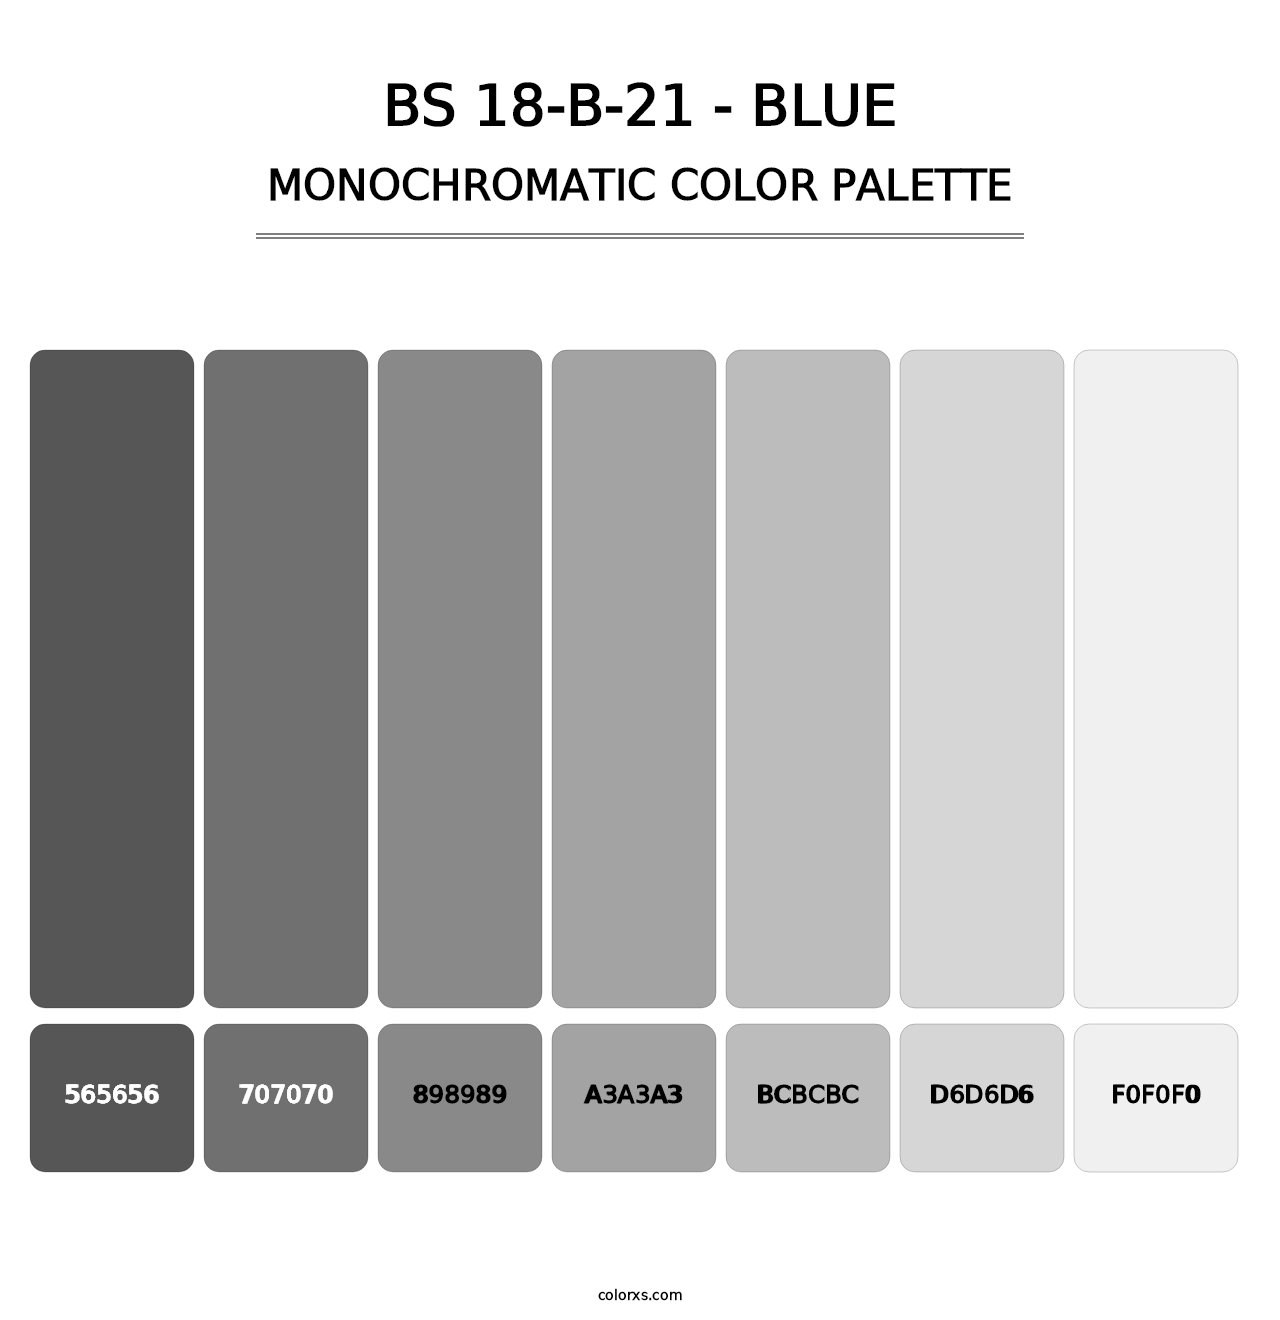 BS 18-B-21 - Blue - Monochromatic Color Palette